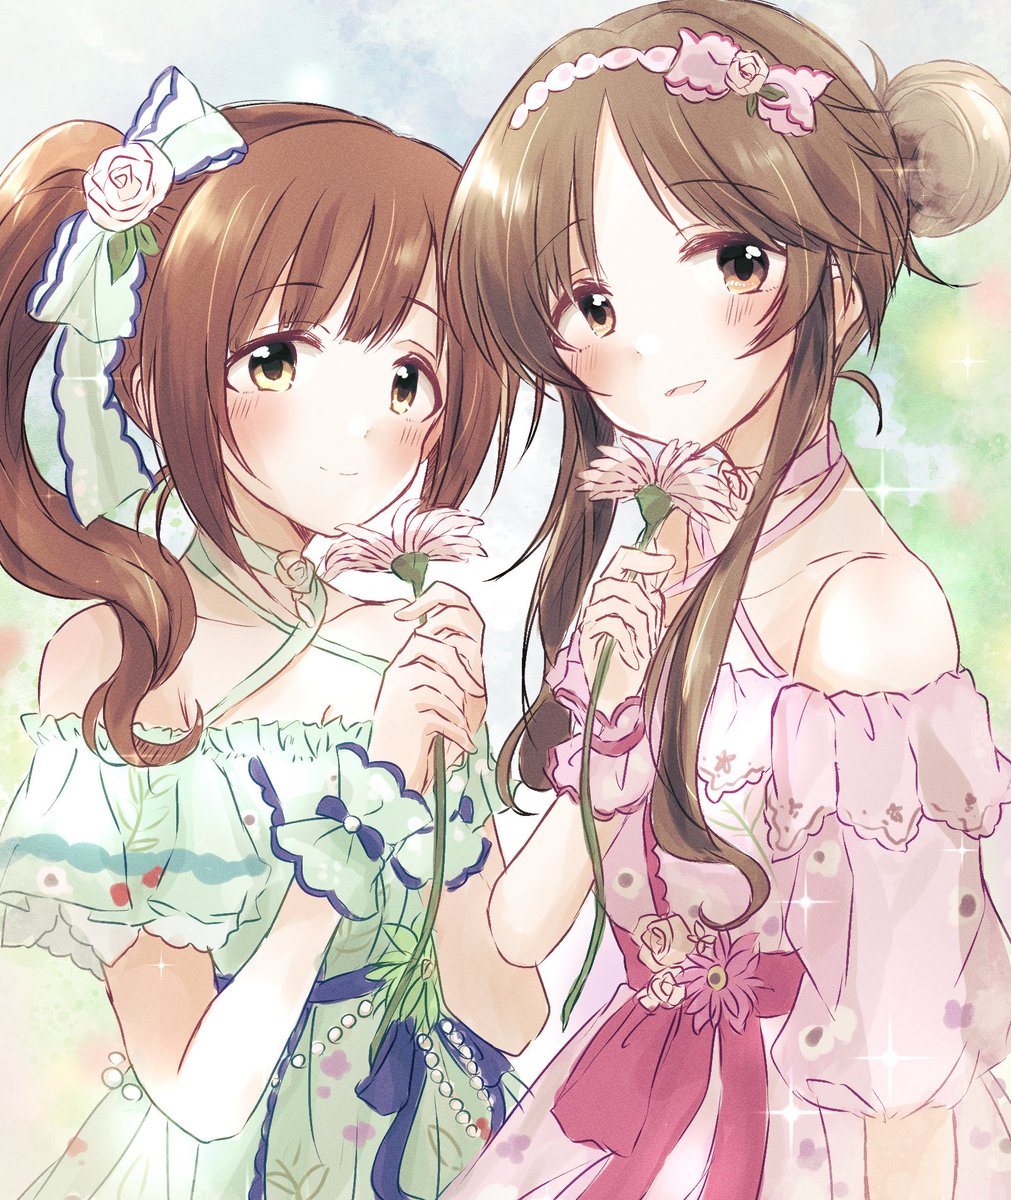 takamori aiko multiple girls 2girls brown hair flower holding hair bun dress  illustration images